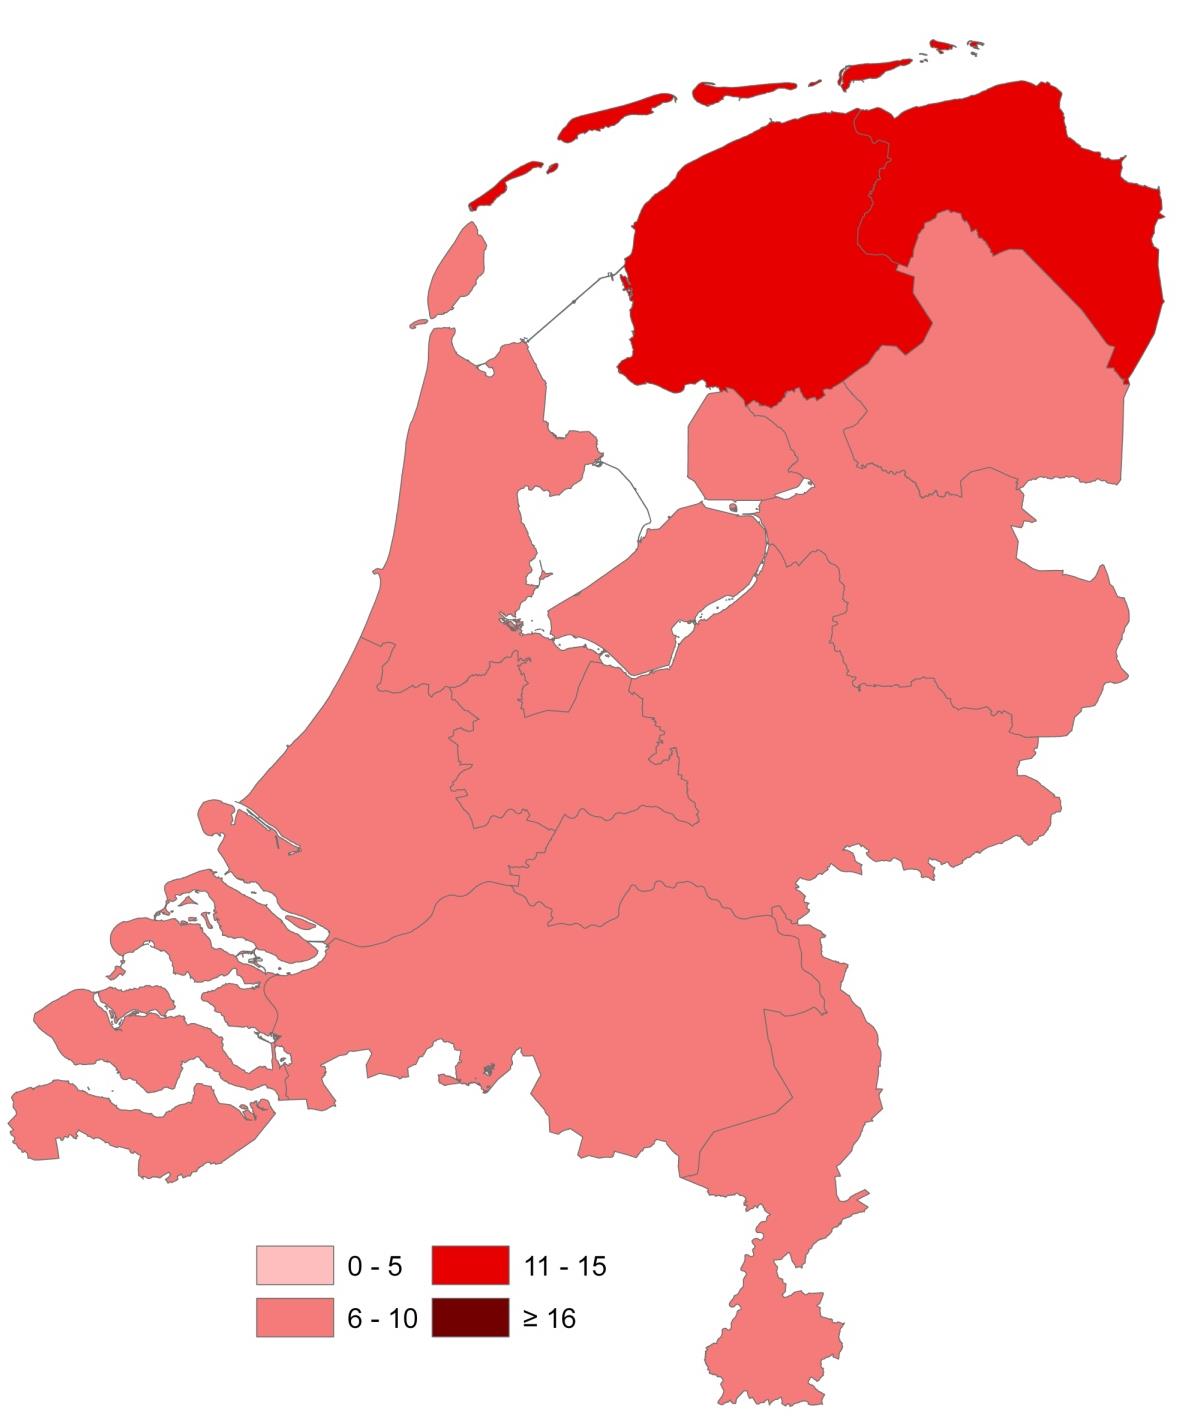 Ongelijkheid perinatale uitkomsten 1 Amsterdam: 10.7 AW: 12.6 vs. niet 9.7 11.0 11.0 9.4 Utrecht: 11.0 AW: 13.6 vs. niet10.2 8.8 10.2 9.6 Den Haag: 11.2 AW: 14.7 vs.